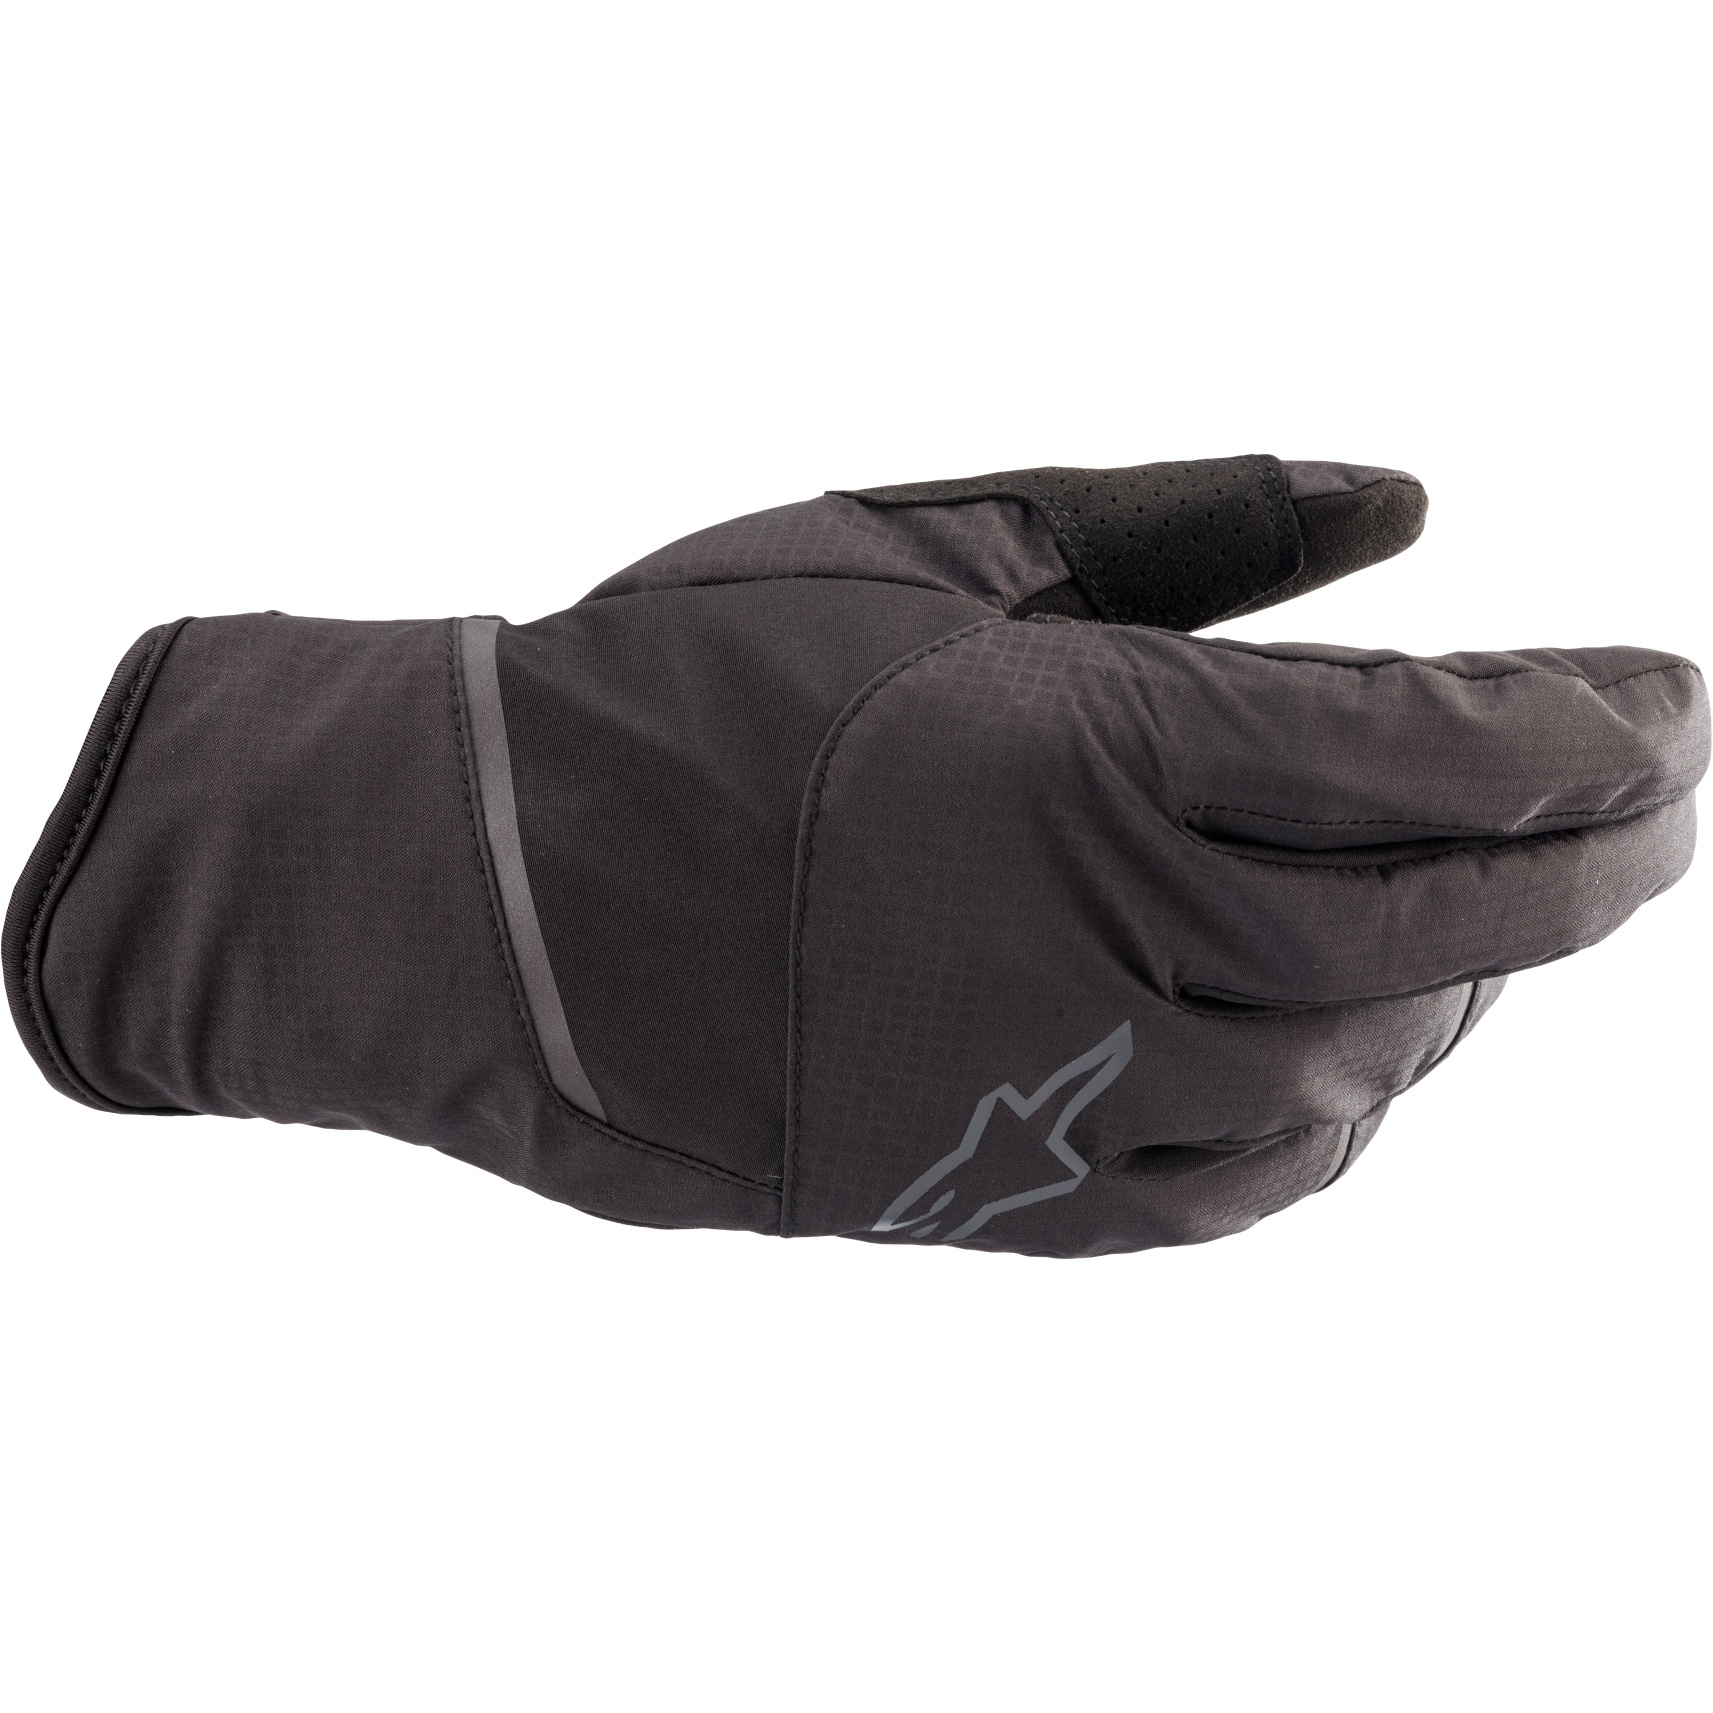 Produktbild von Alpinestars Tahoe Waterproof Handschuhe - black/anthracite